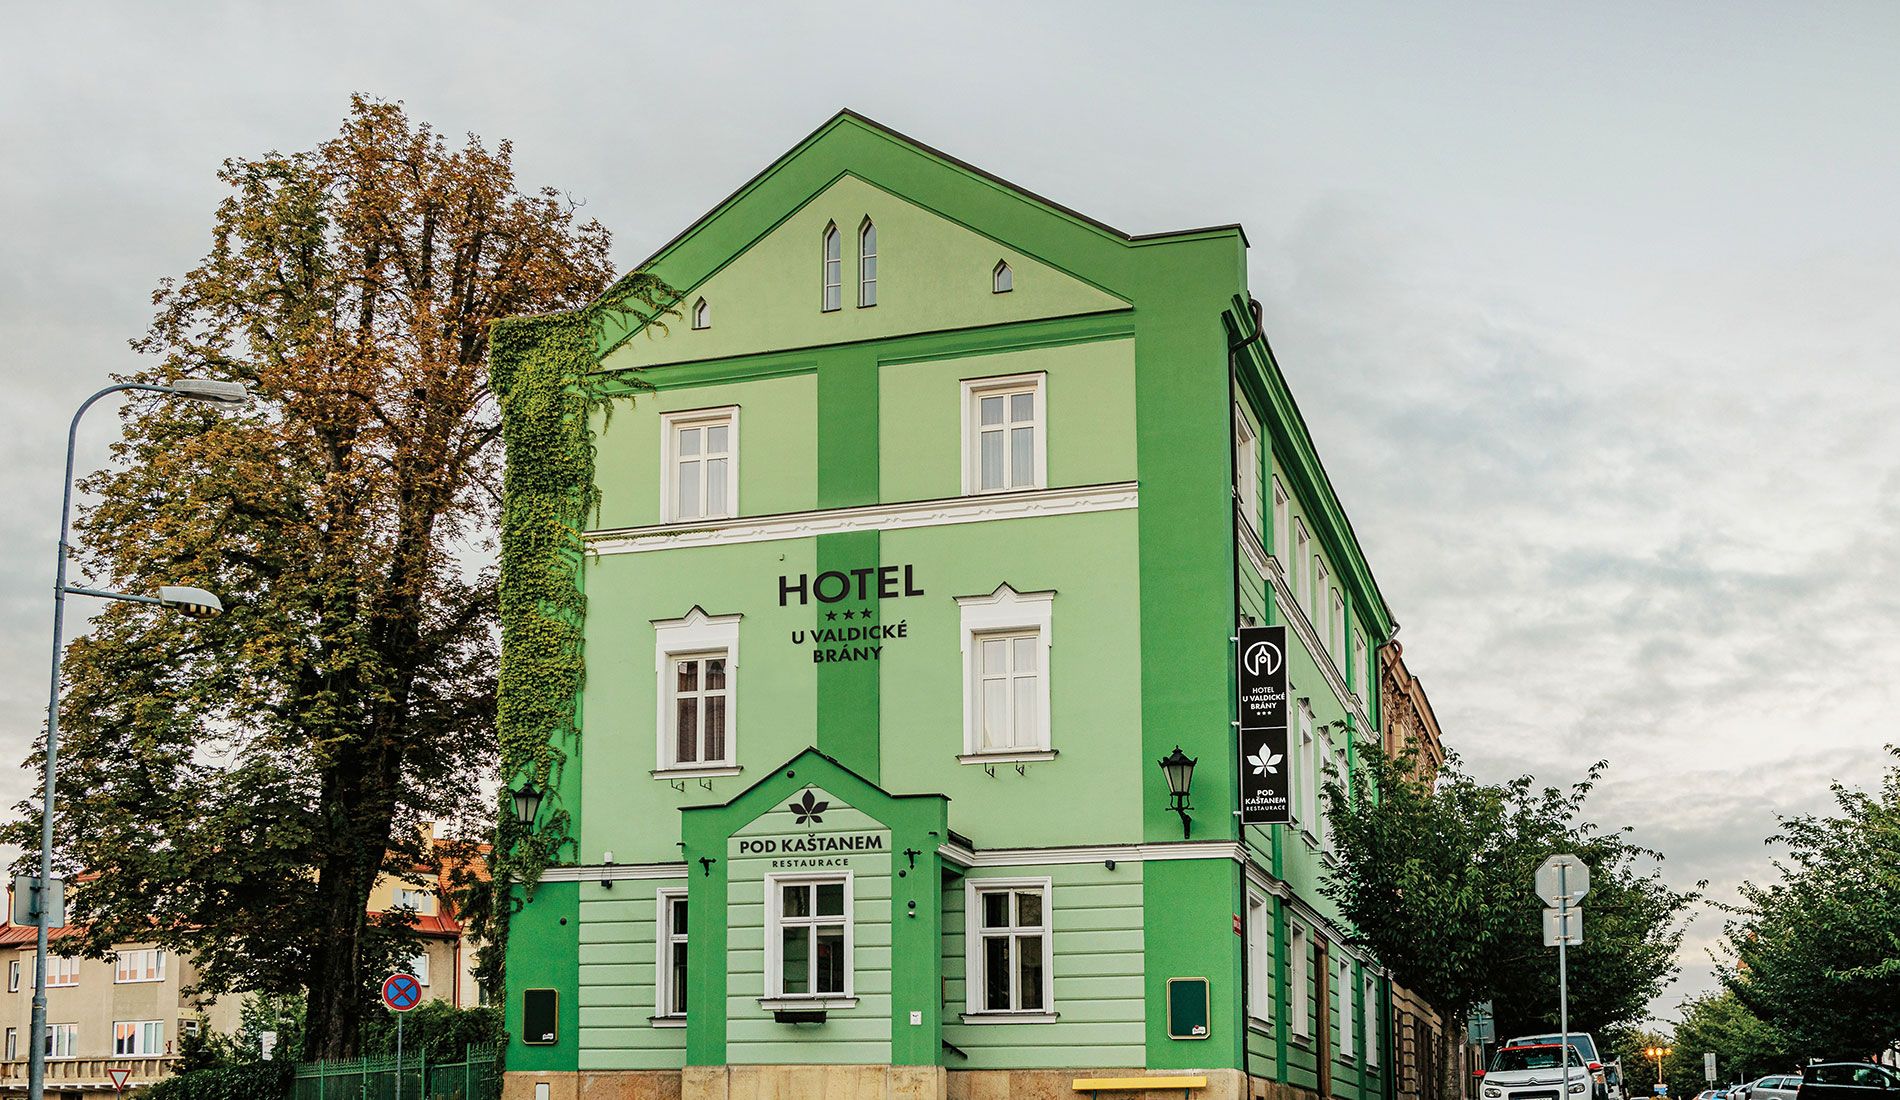 Hotel U Valdické brány (v/h hotel Jičín)